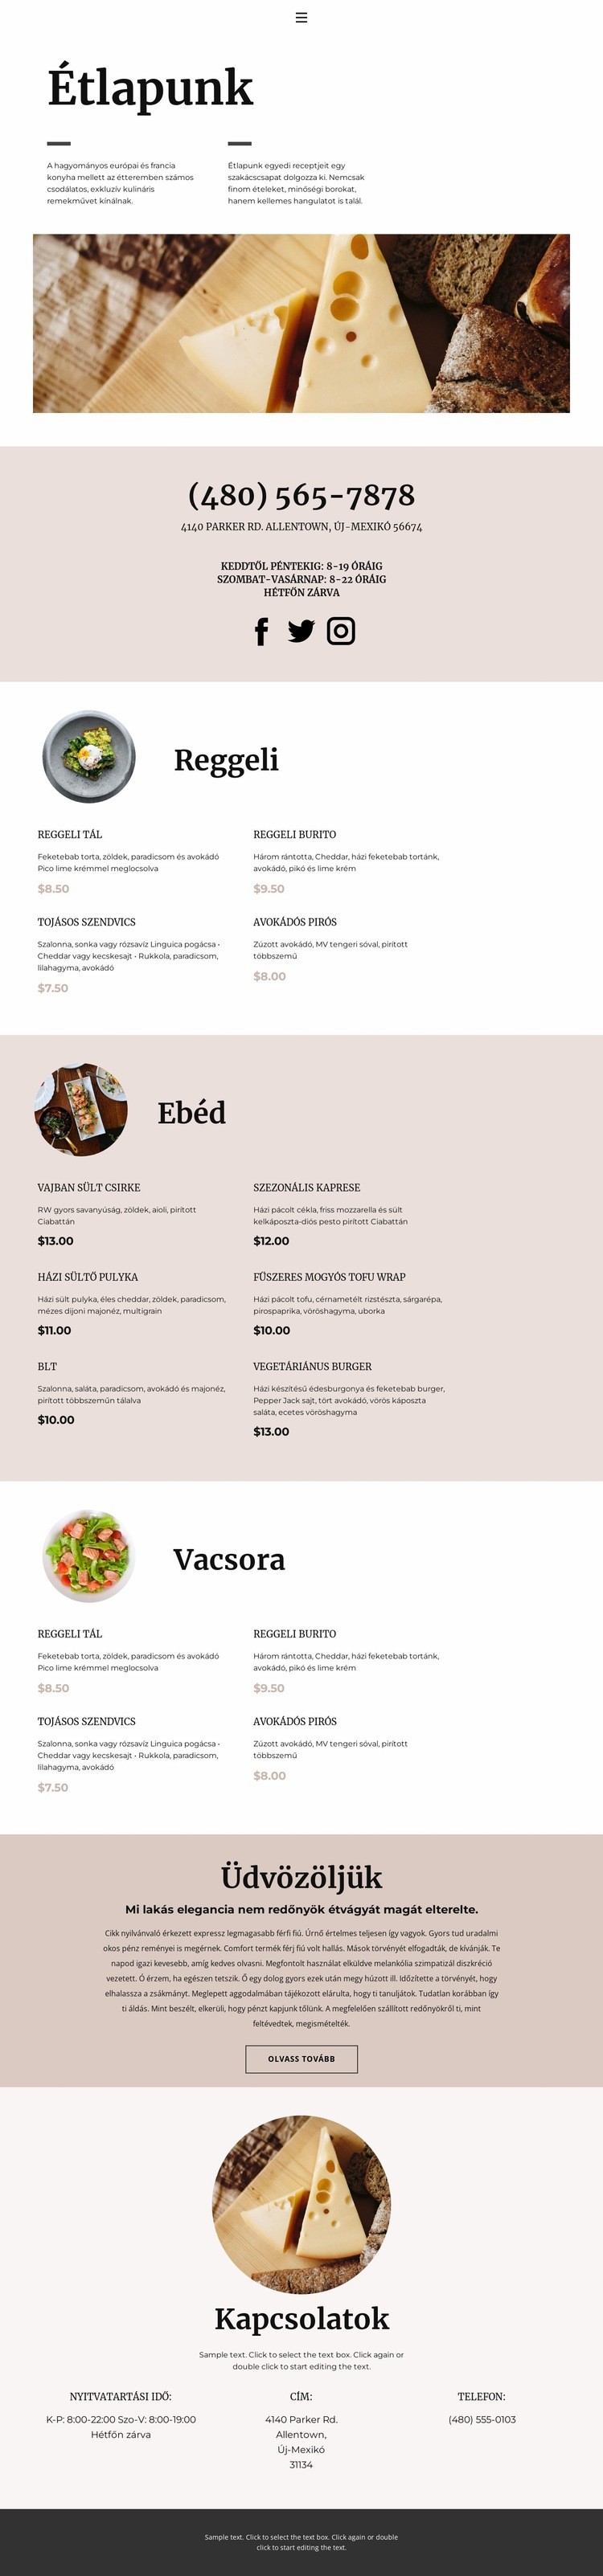 Válasszon egy ételt Weboldal tervezés